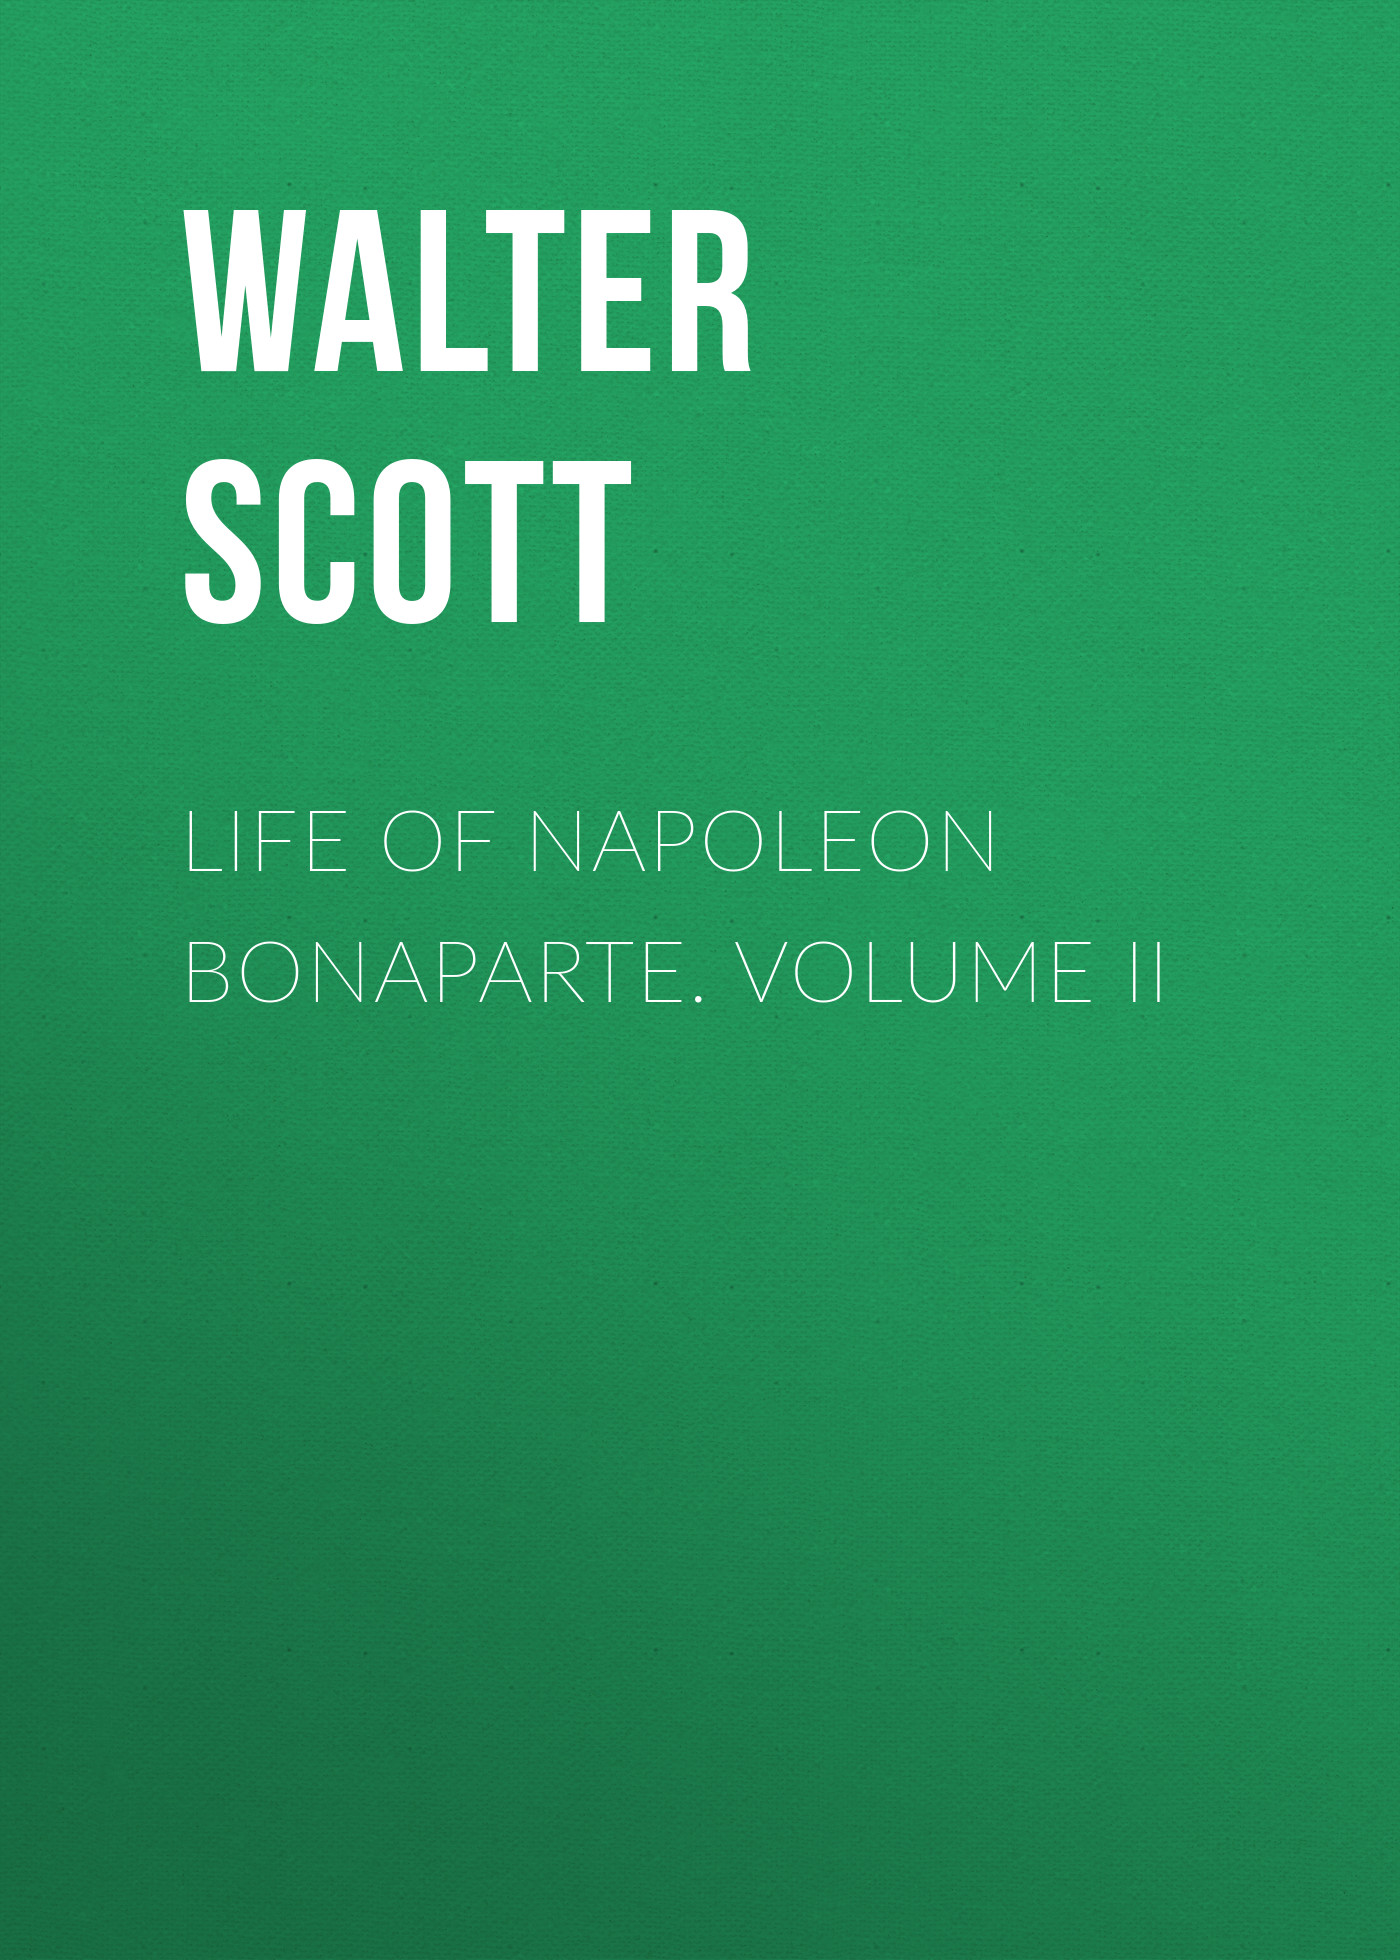 Книга Life of Napoleon Bonaparte. Volume II из серии , созданная Walter Scott, может относится к жанру Зарубежная классика. Стоимость электронной книги Life of Napoleon Bonaparte. Volume II с идентификатором 23166723 составляет 5.99 руб.